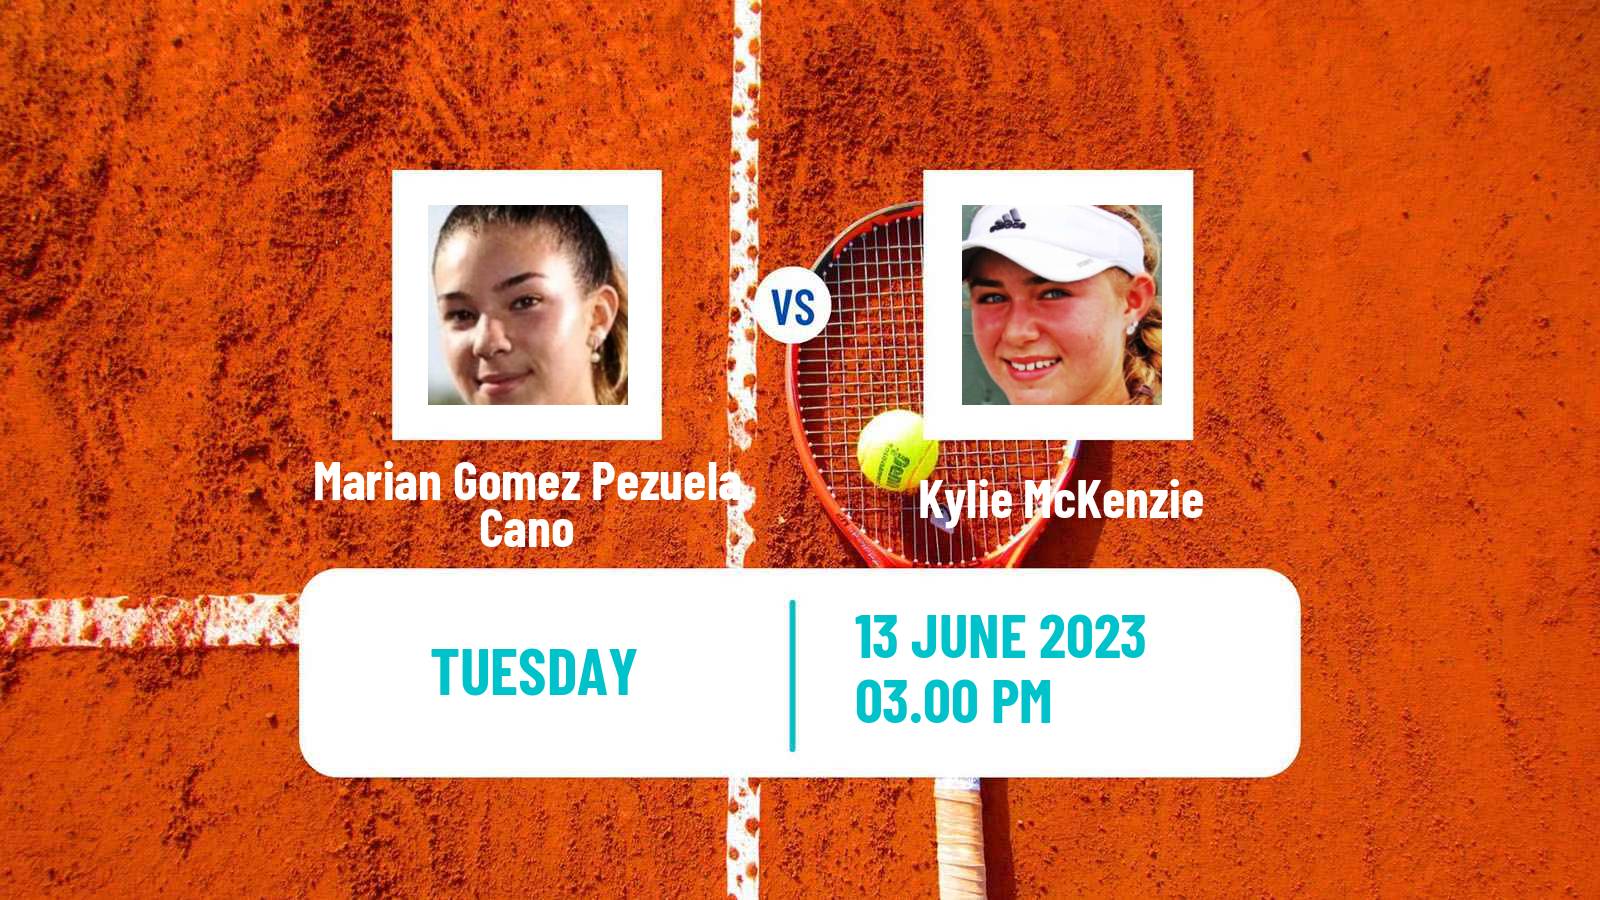 Tennis ITF W15 San Diego Ca 2 Women Marian Gomez Pezuela Cano - Kylie McKenzie